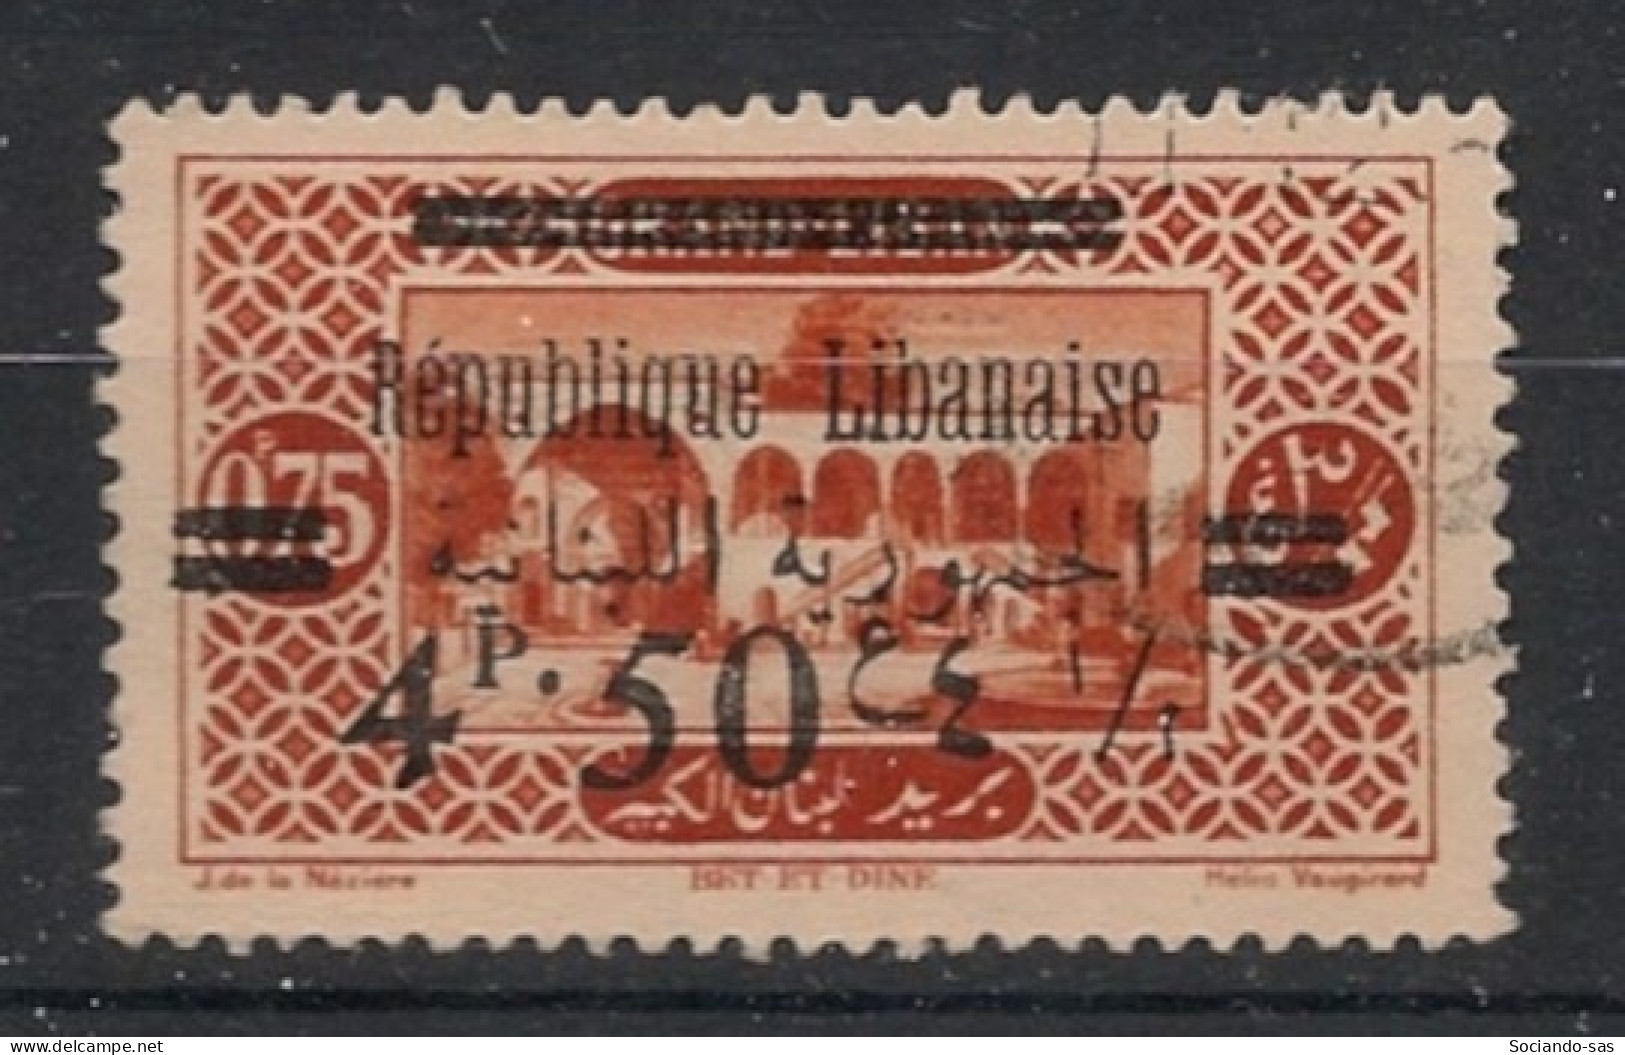 GRAND LIBAN - 1928 - N°YT. 105 - Bet Et Dine 4pi50 Sur 0pi75 Rouge - Oblitéré / Used - Oblitérés